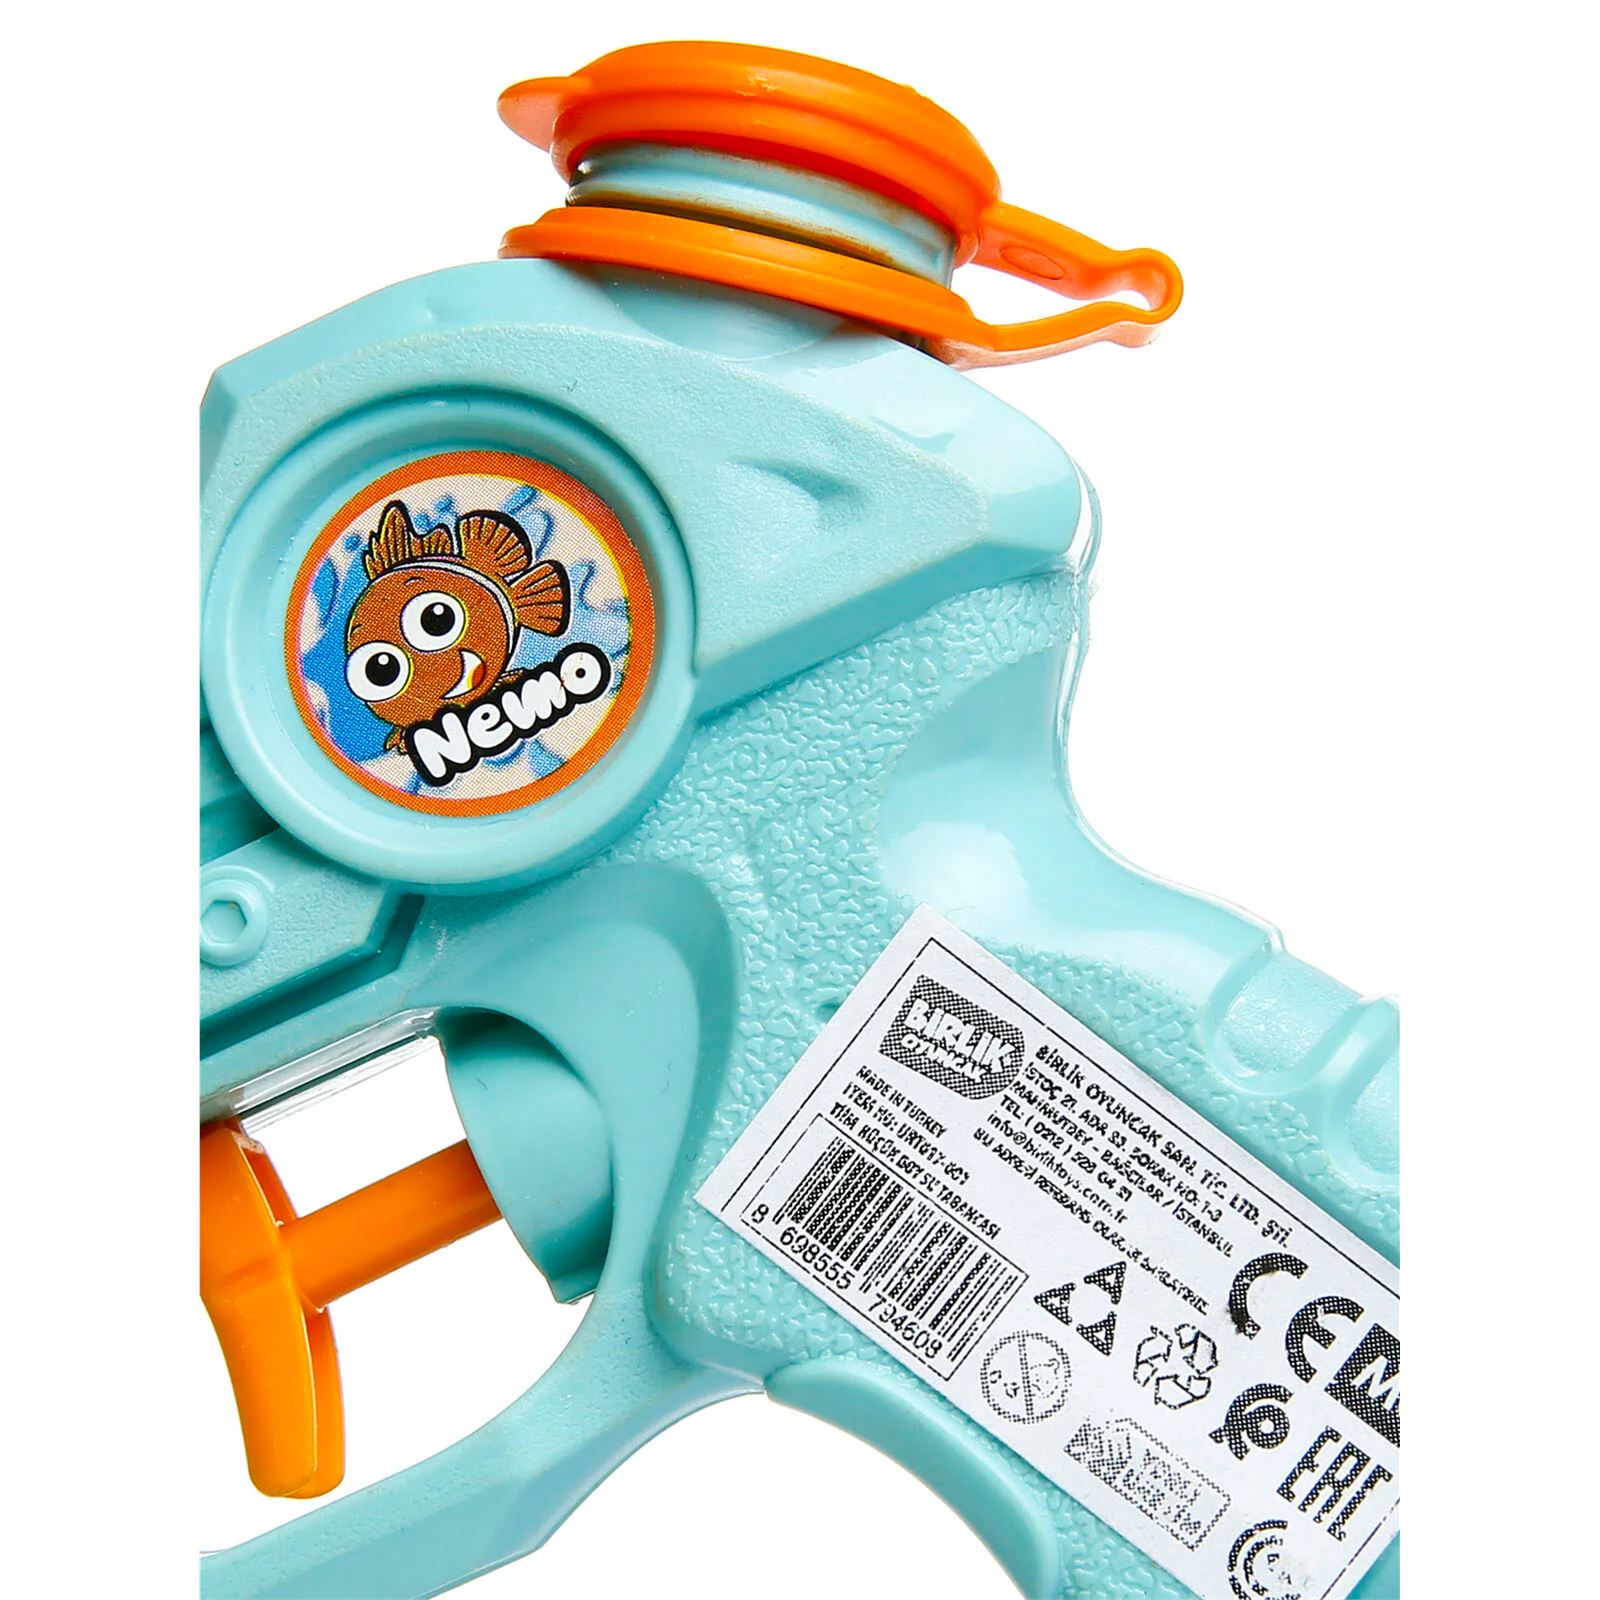 Birlik Oyuncak Timm Water Blaster Nemo Küçük Boy Su Tabancası Kırmızı